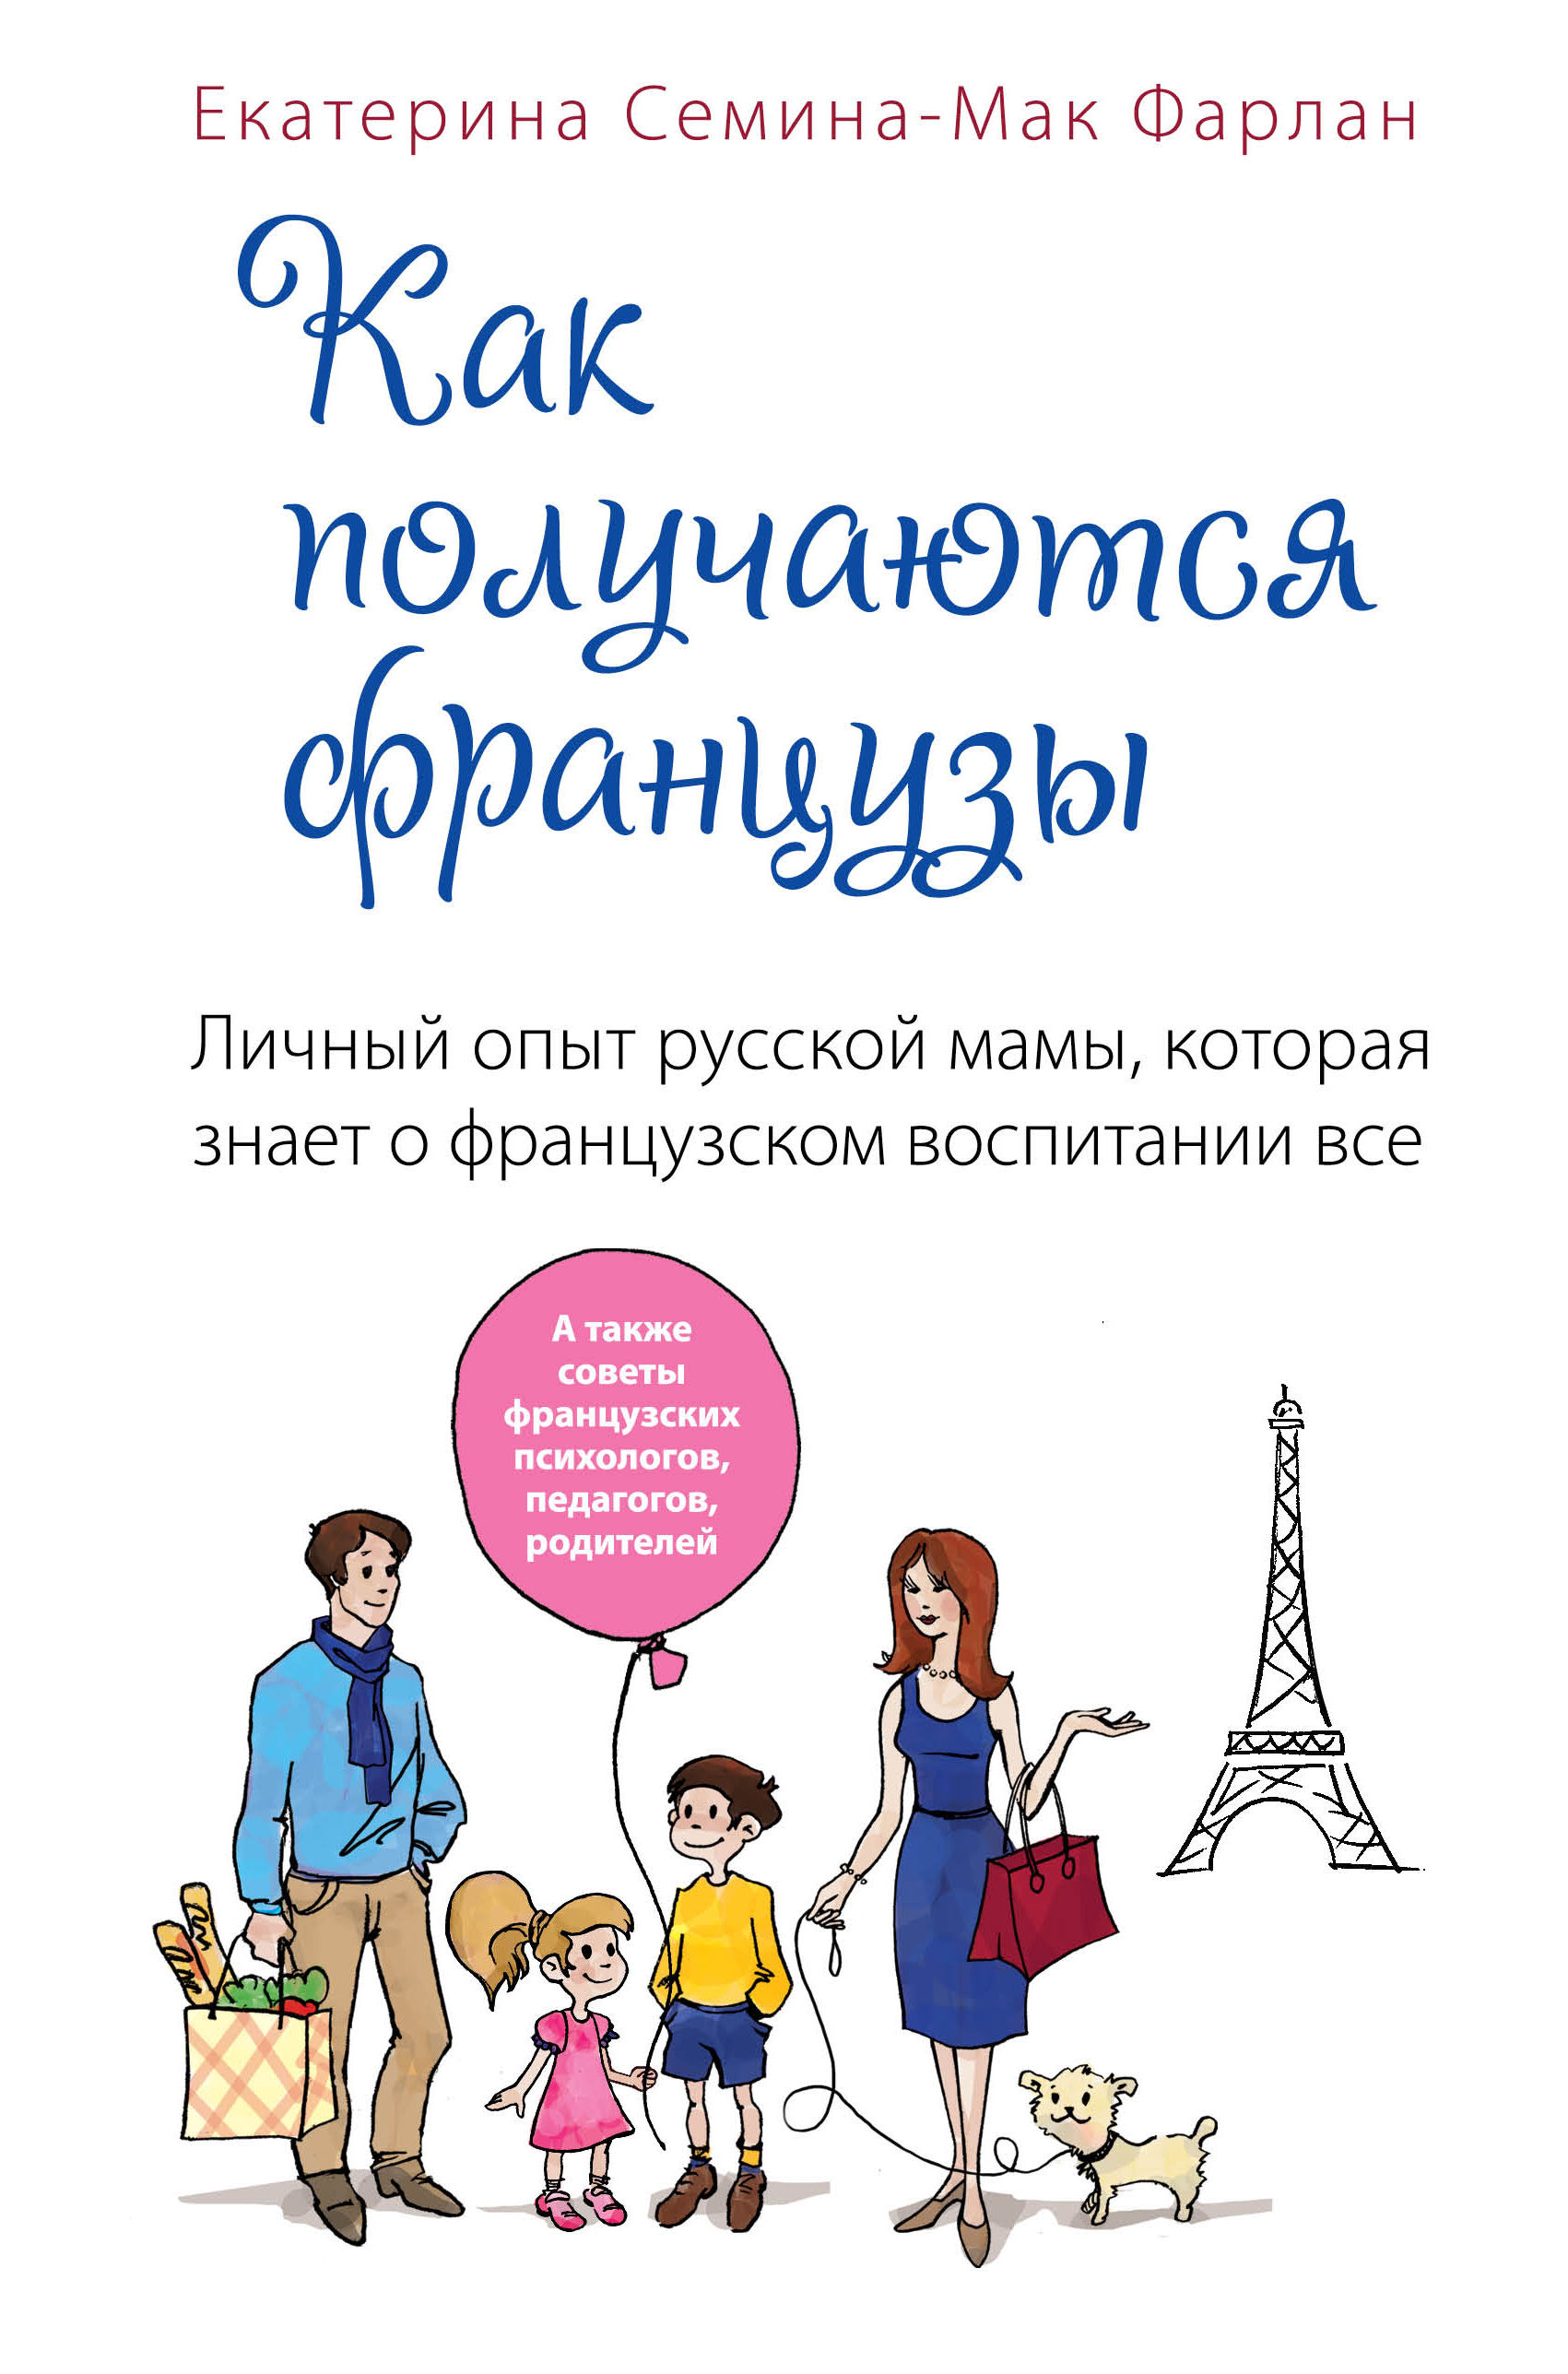 Русская мама из франции поделилась секретами европейского воспитания (дети менее капризны)